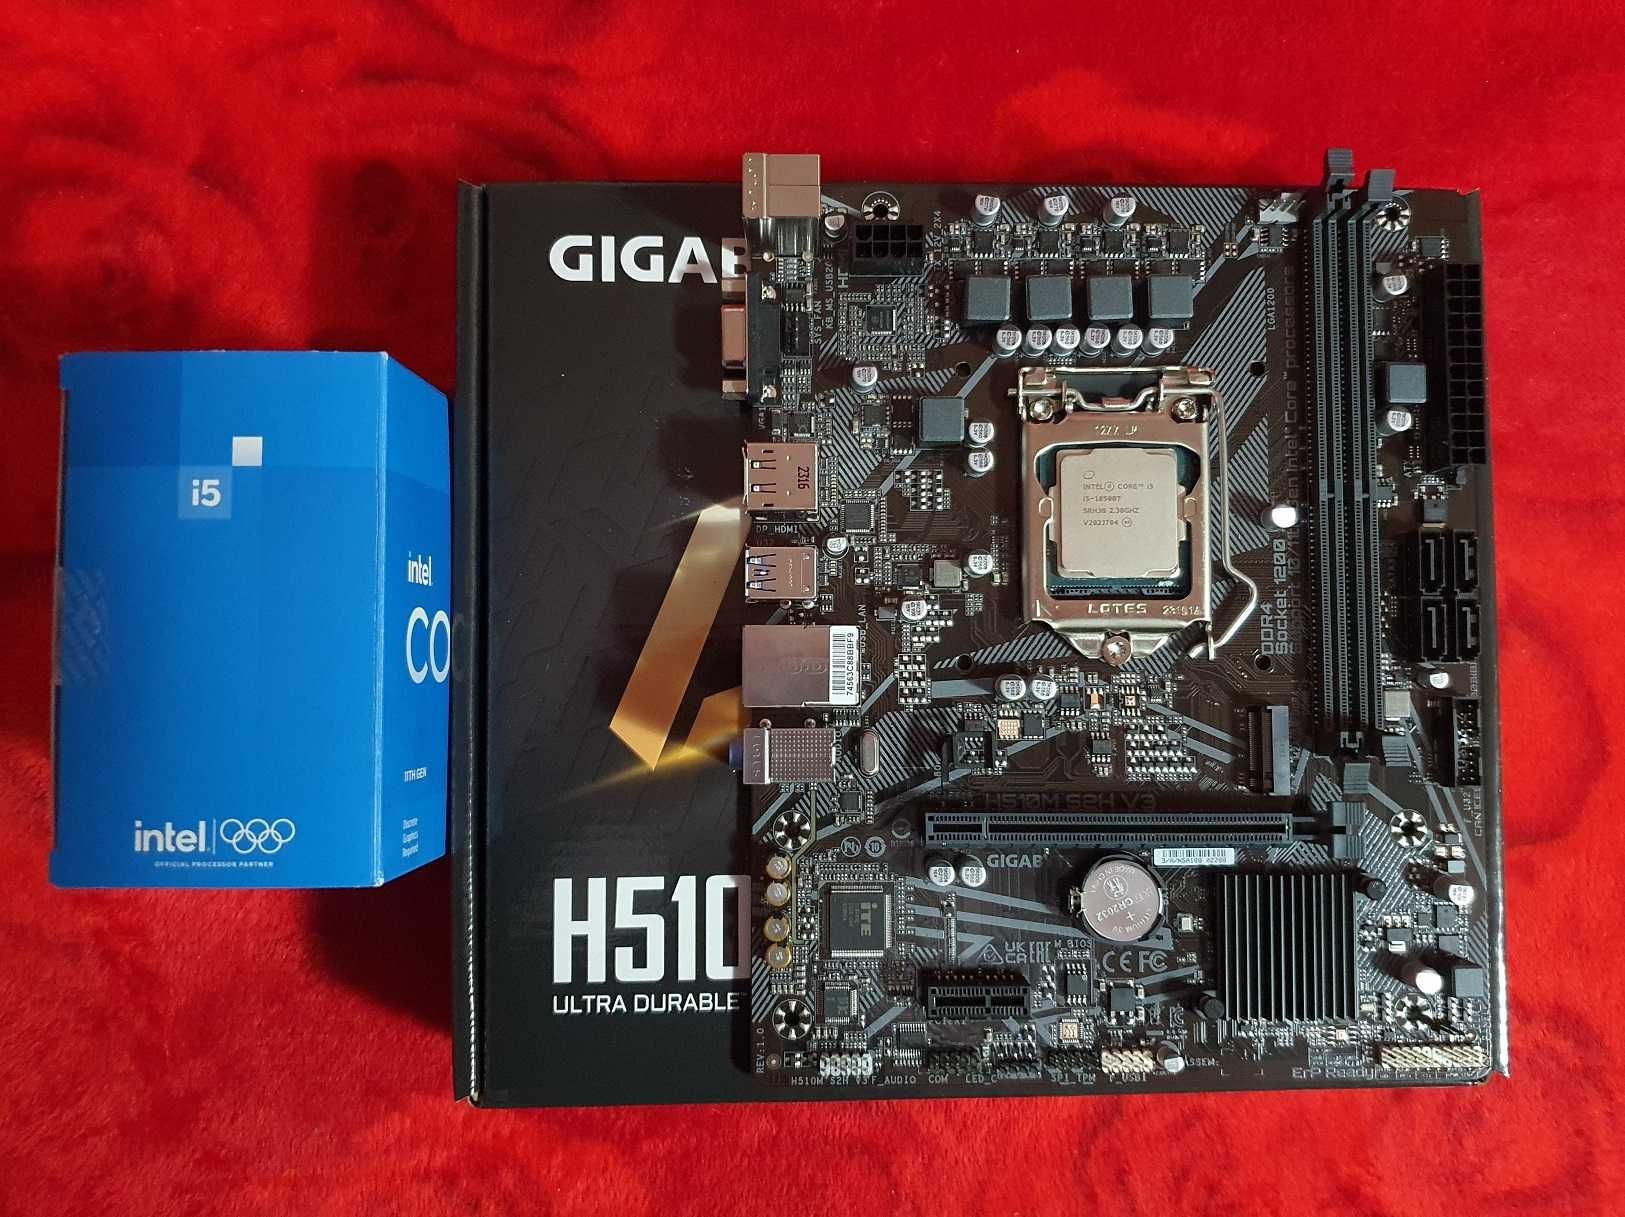 Kit Gaming i5-10500T 6/12 Core + Gigabyte H510M-S2H